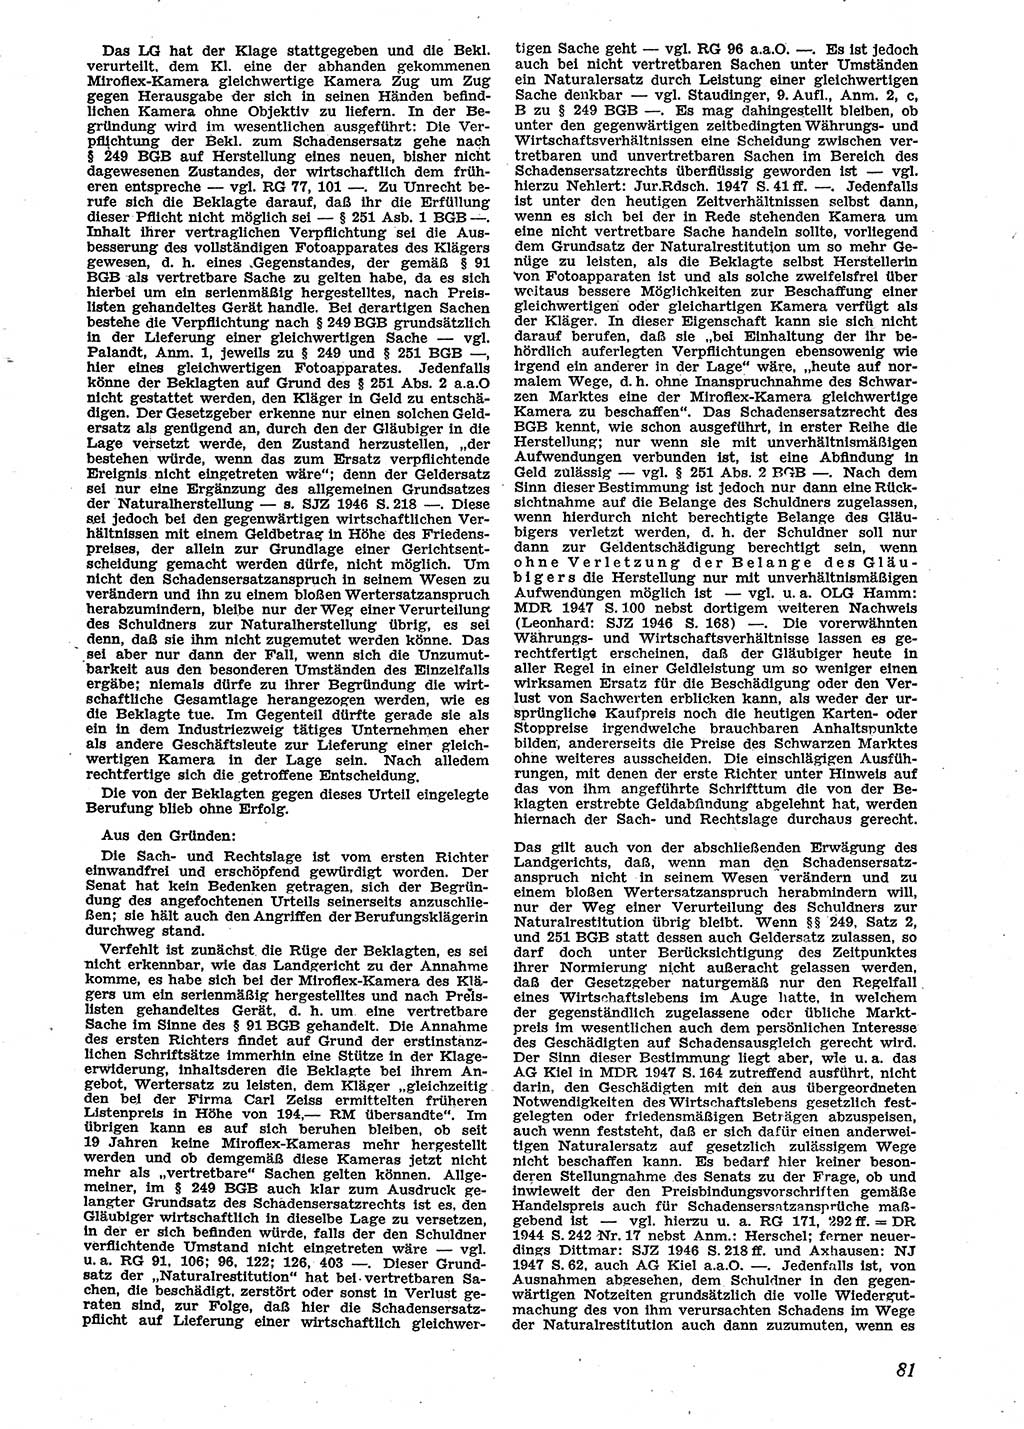 Neue Justiz (NJ), Zeitschrift für Recht und Rechtswissenschaft [Sowjetische Besatzungszone (SBZ) Deutschland], 2. Jahrgang 1948, Seite 81 (NJ SBZ Dtl. 1948, S. 81)